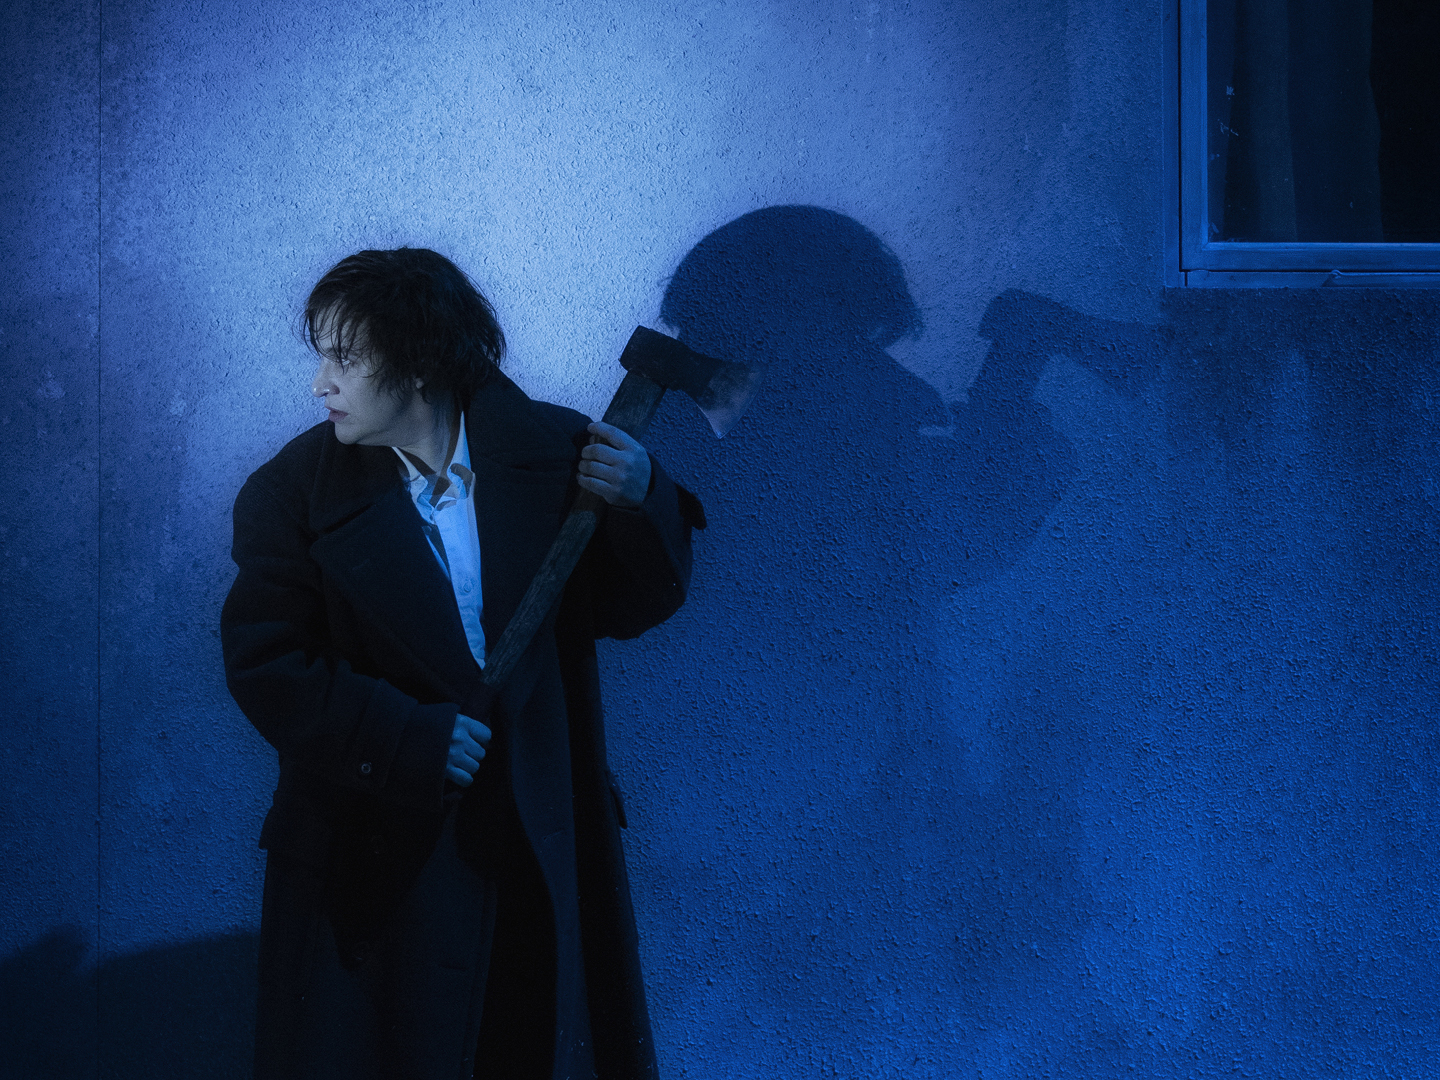 Kvinne med øks i blått lys foran hus